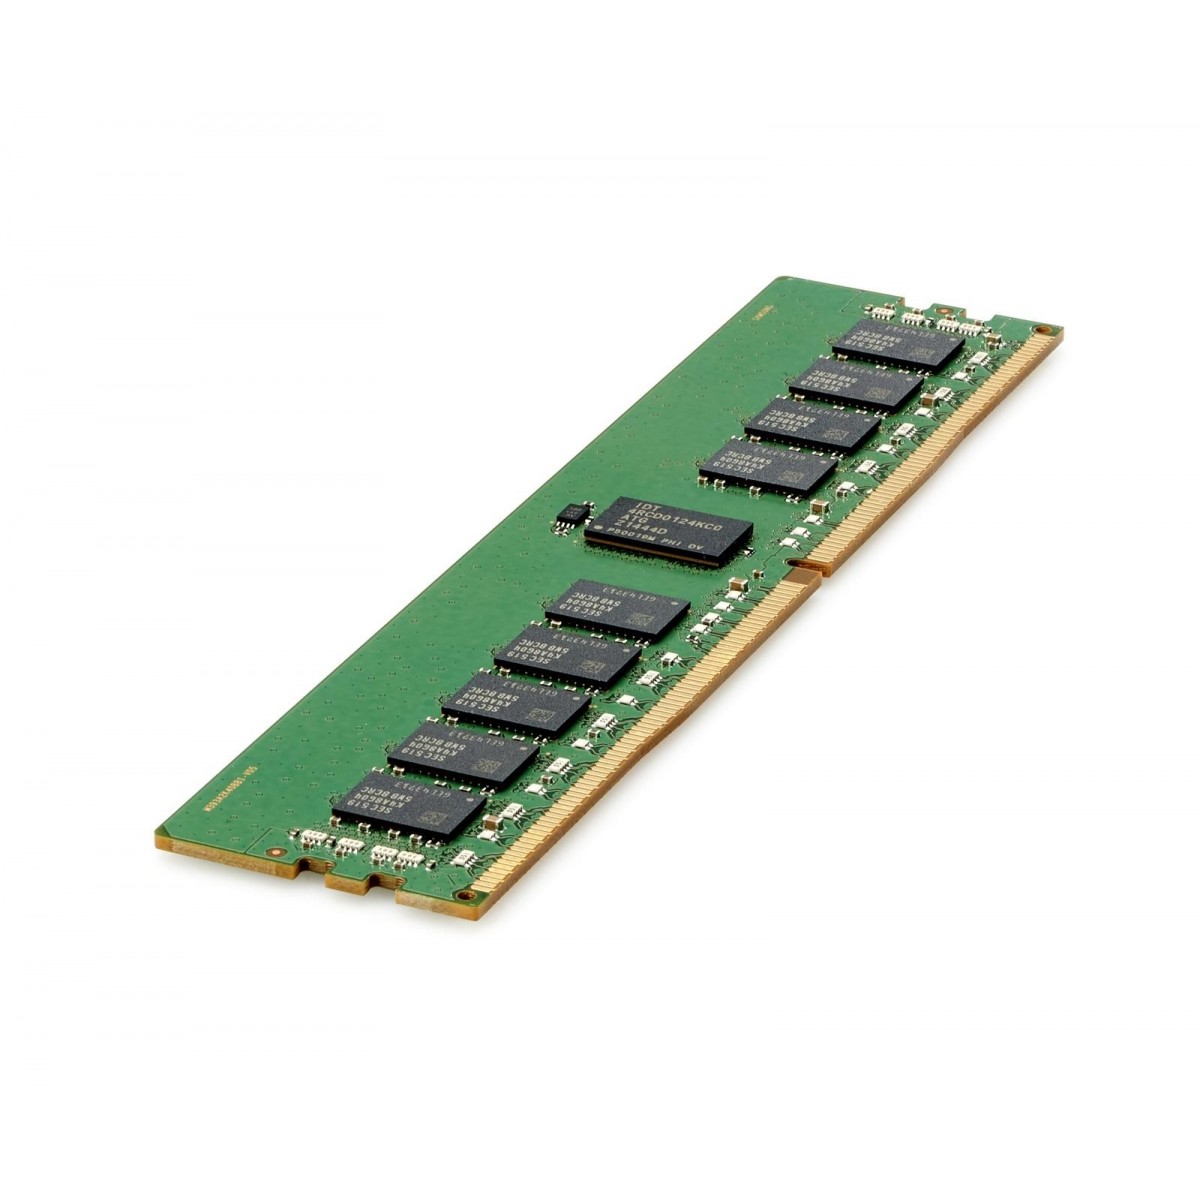 HPE 835955-B21 - 16 GB - 1 x 16 GB - DDR4 - 2666 MHz - 288-pin DIMM